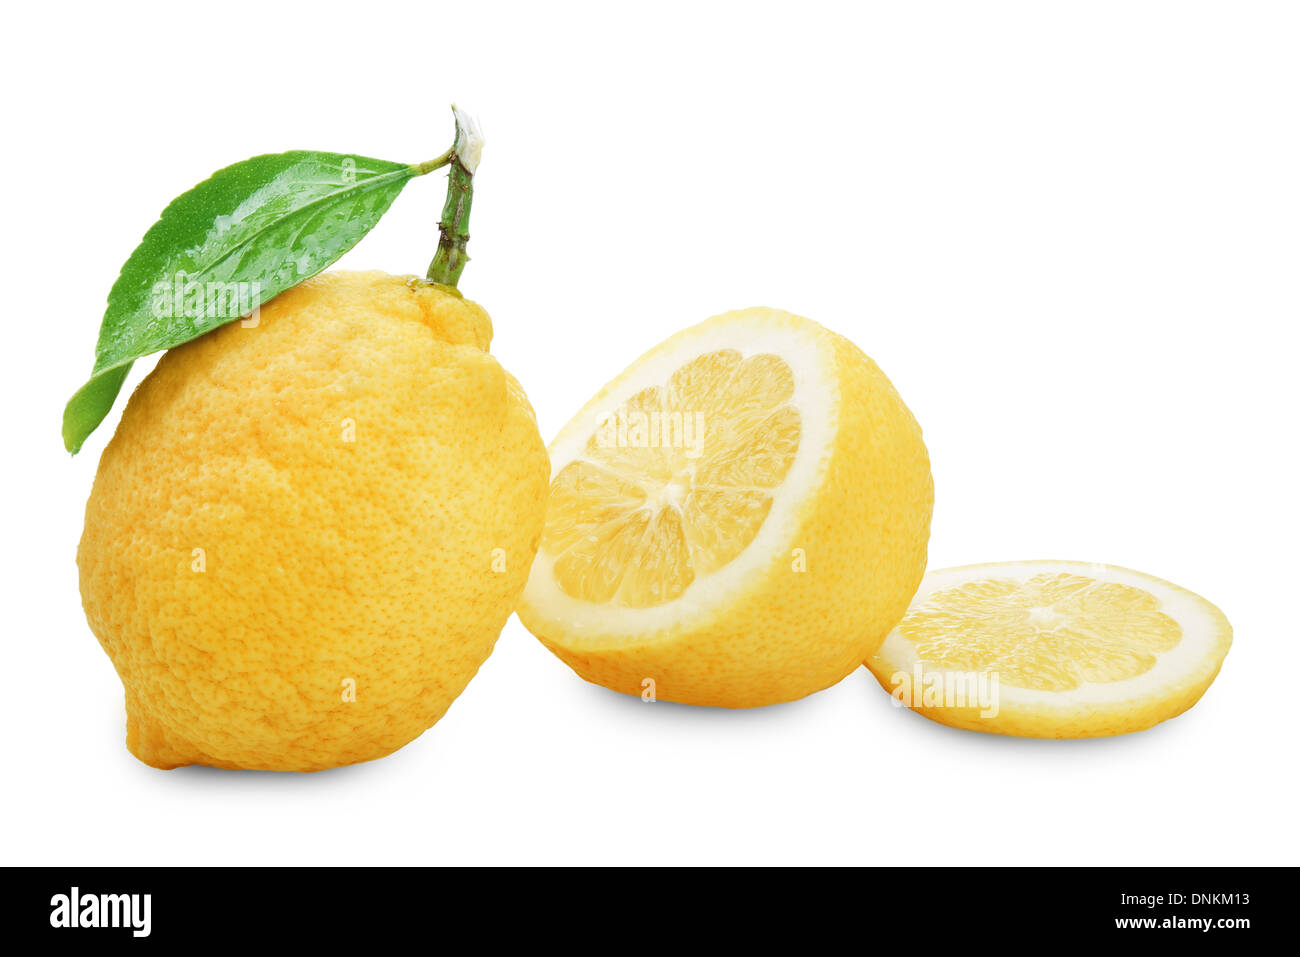 Immagine di limone fresco con foglie isolati su sfondo bianco Foto Stock